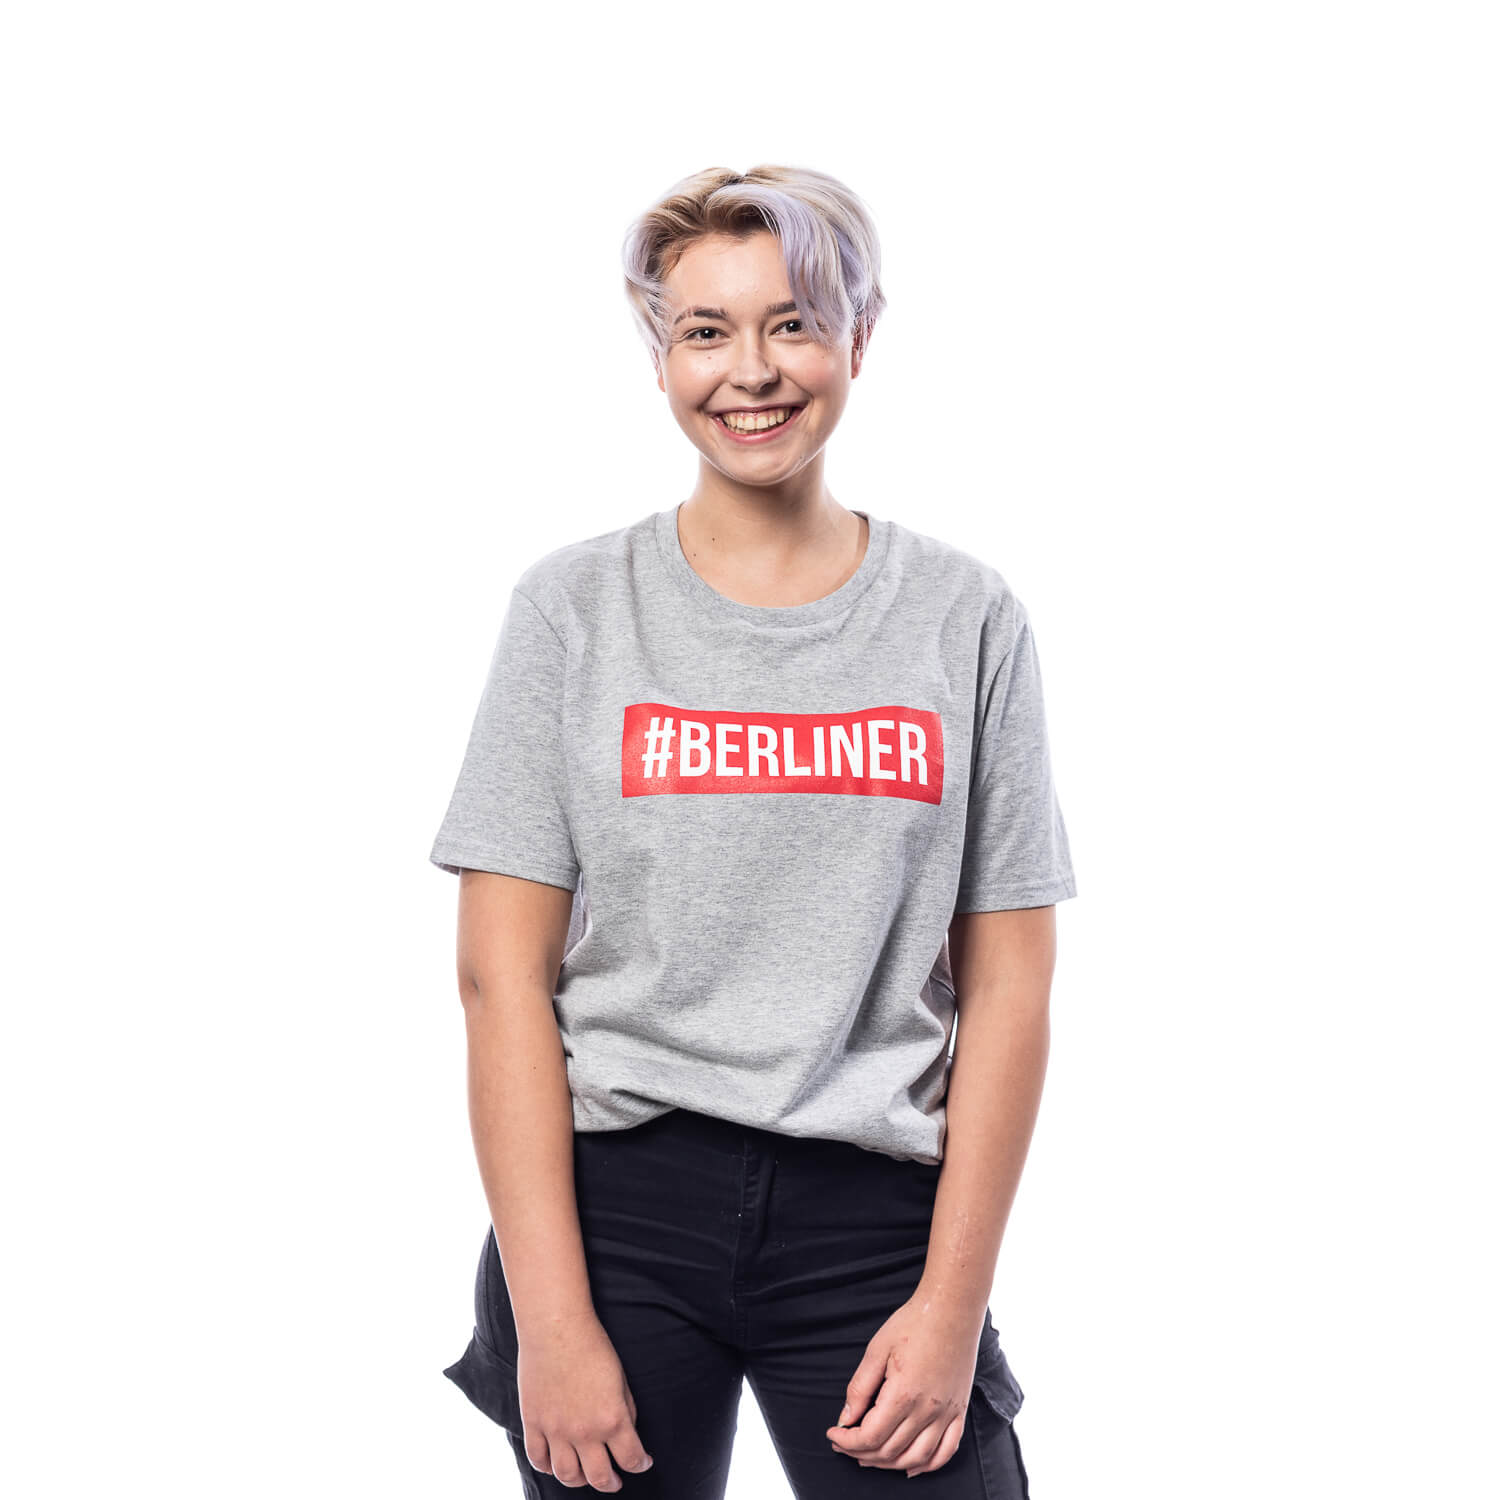 Berliner Pilsner T-Shirt, Motiv #BERLINER, hellgrau